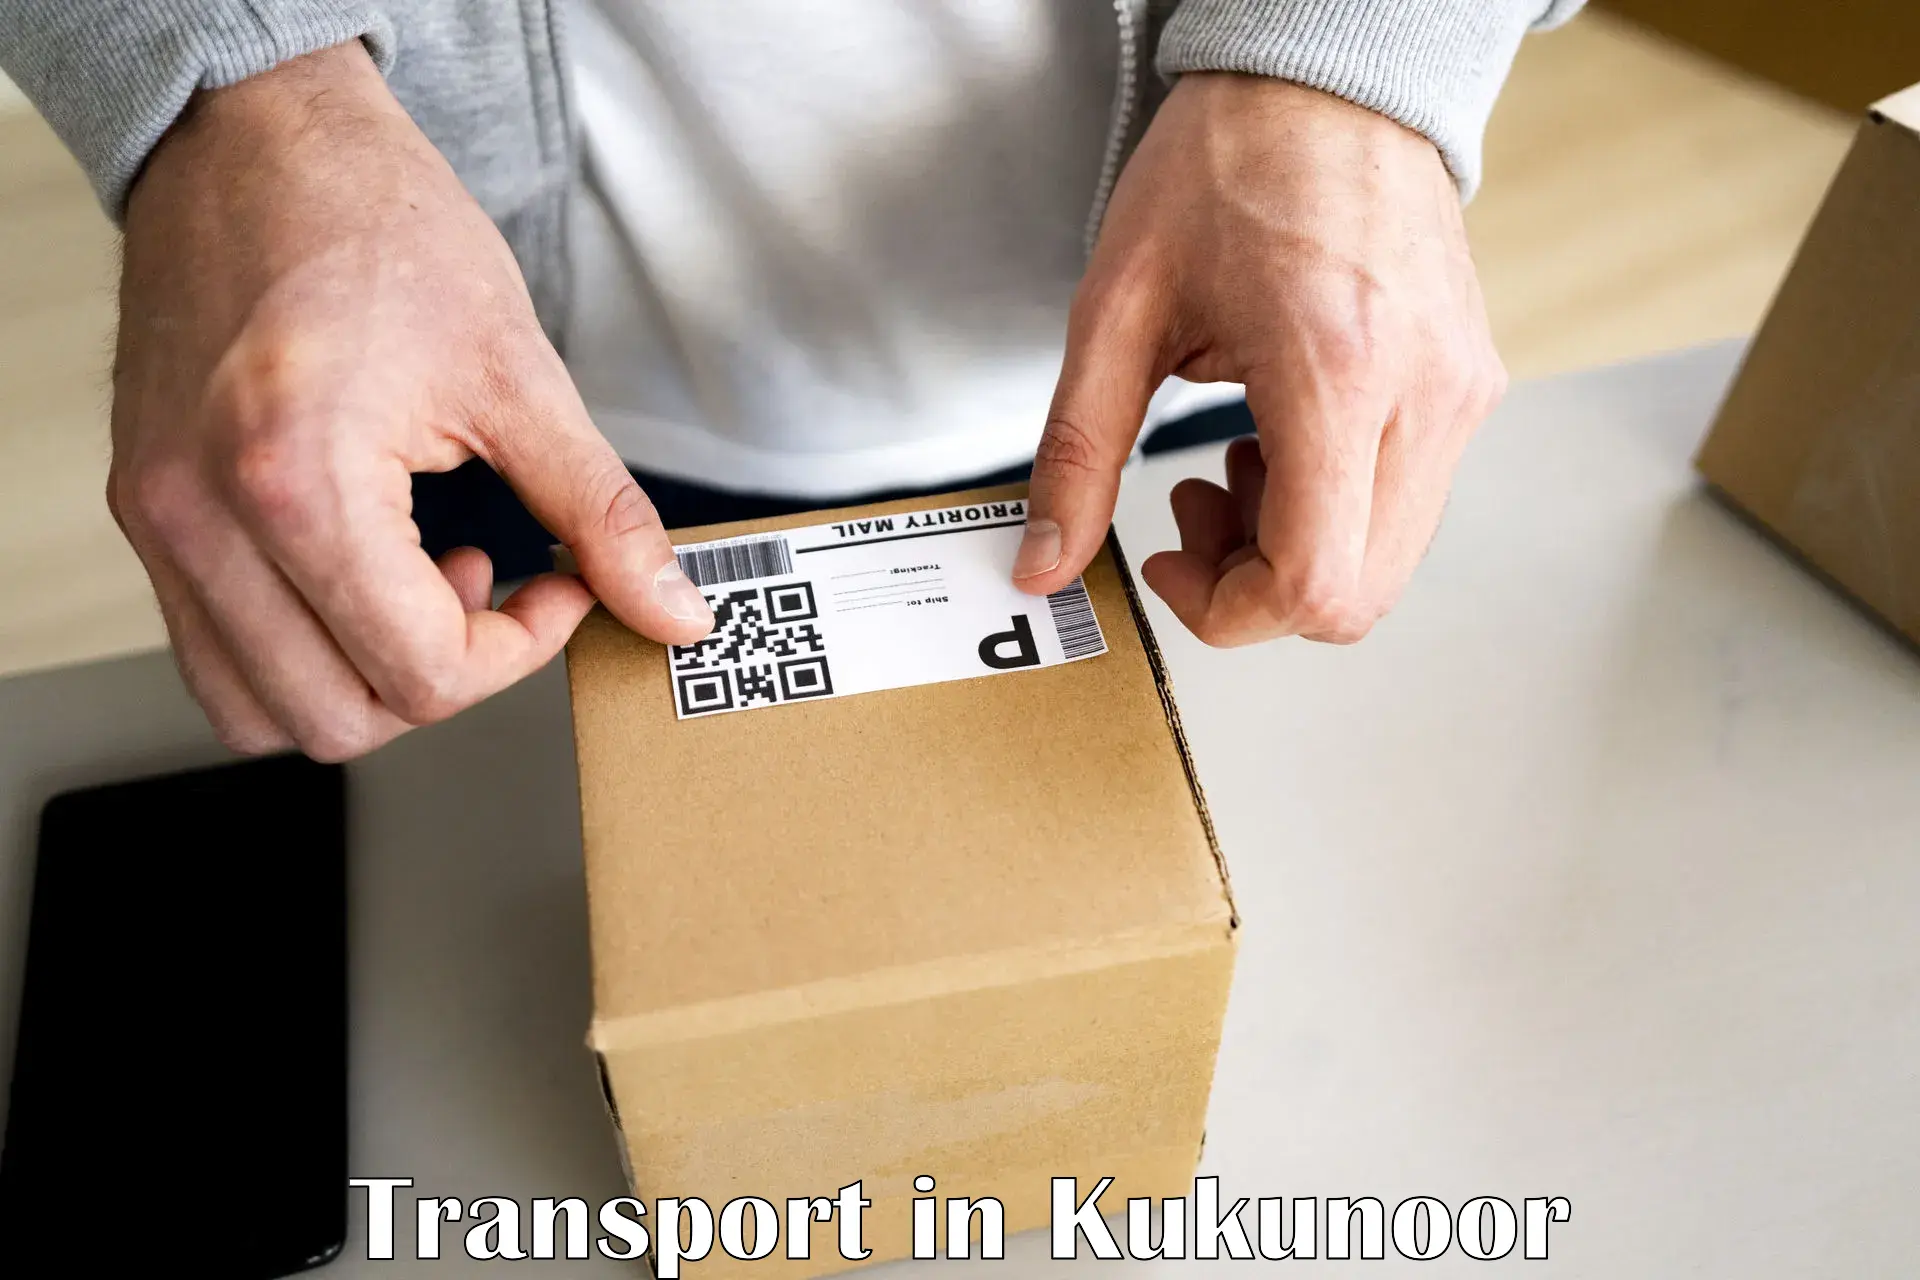 Two wheeler parcel service in Kukunoor